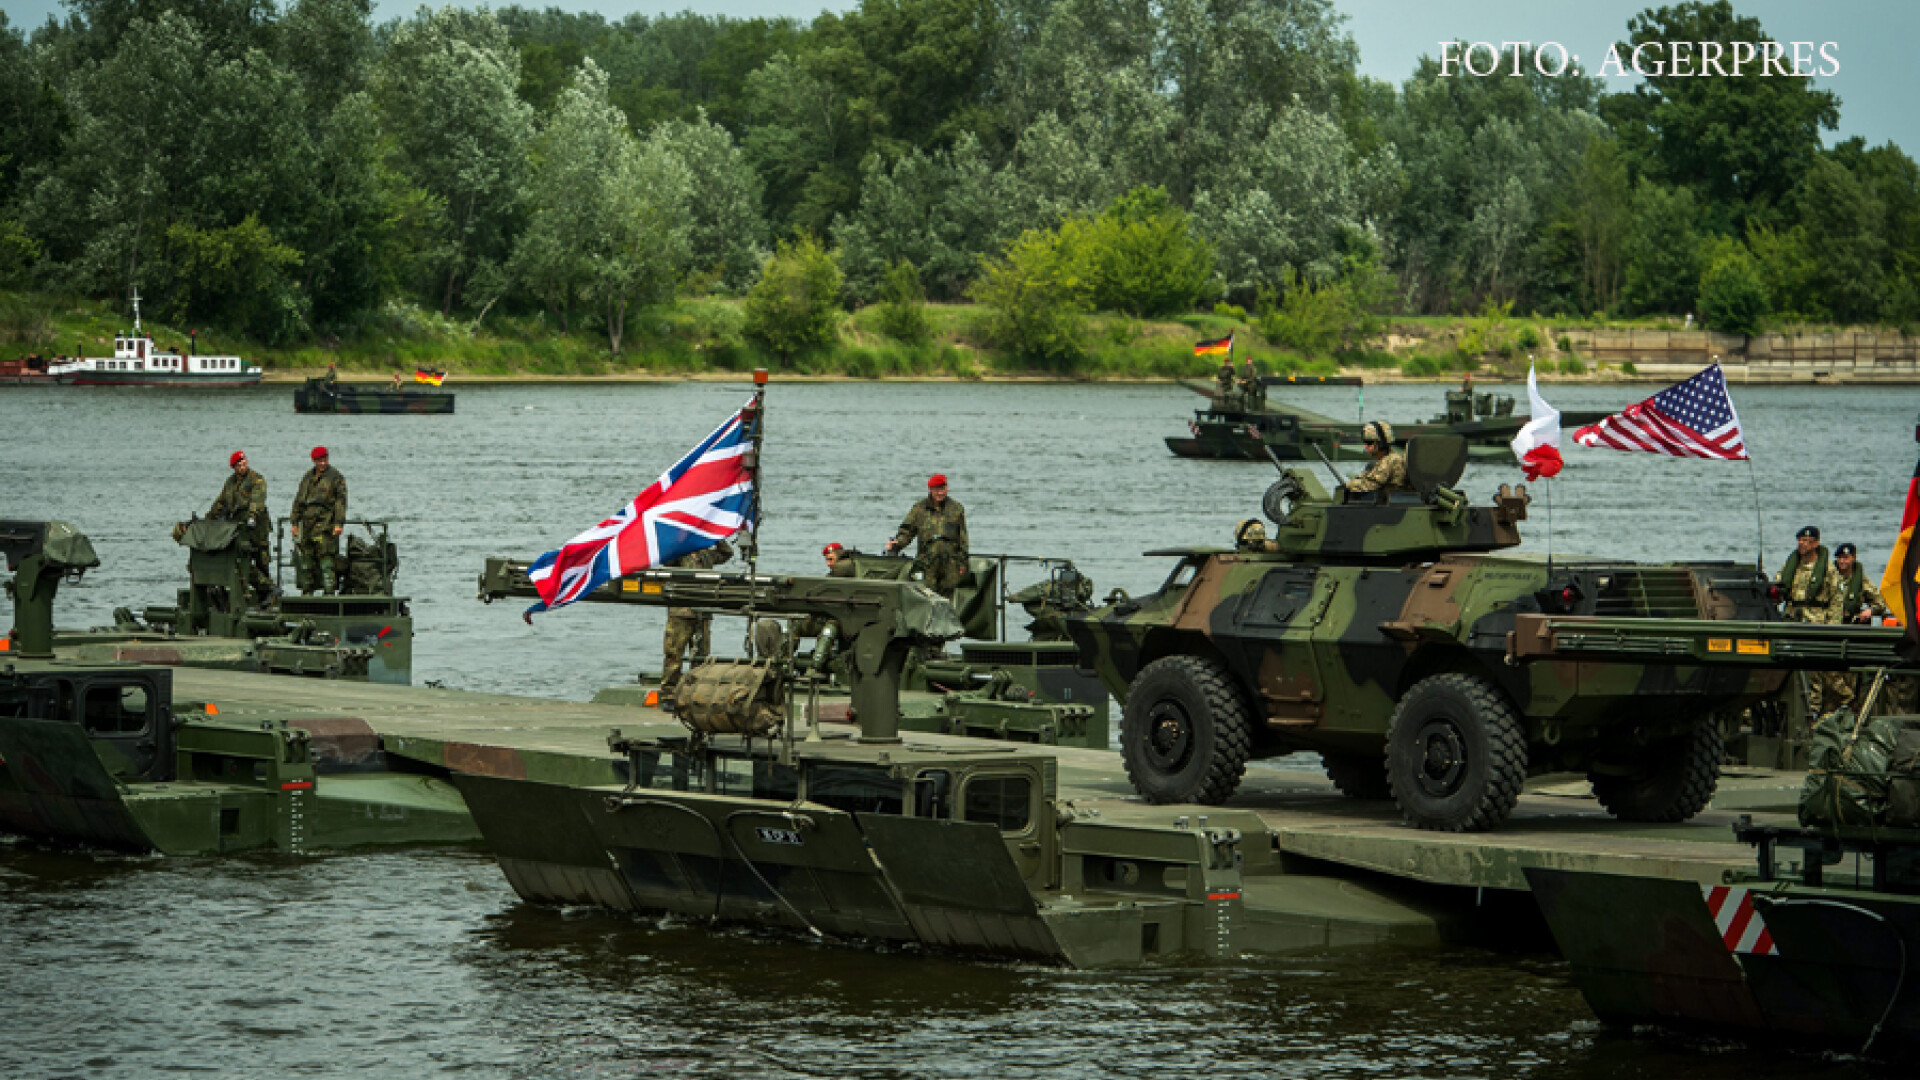 exercitiu militar NATO in Polonia, ANaconda 2016